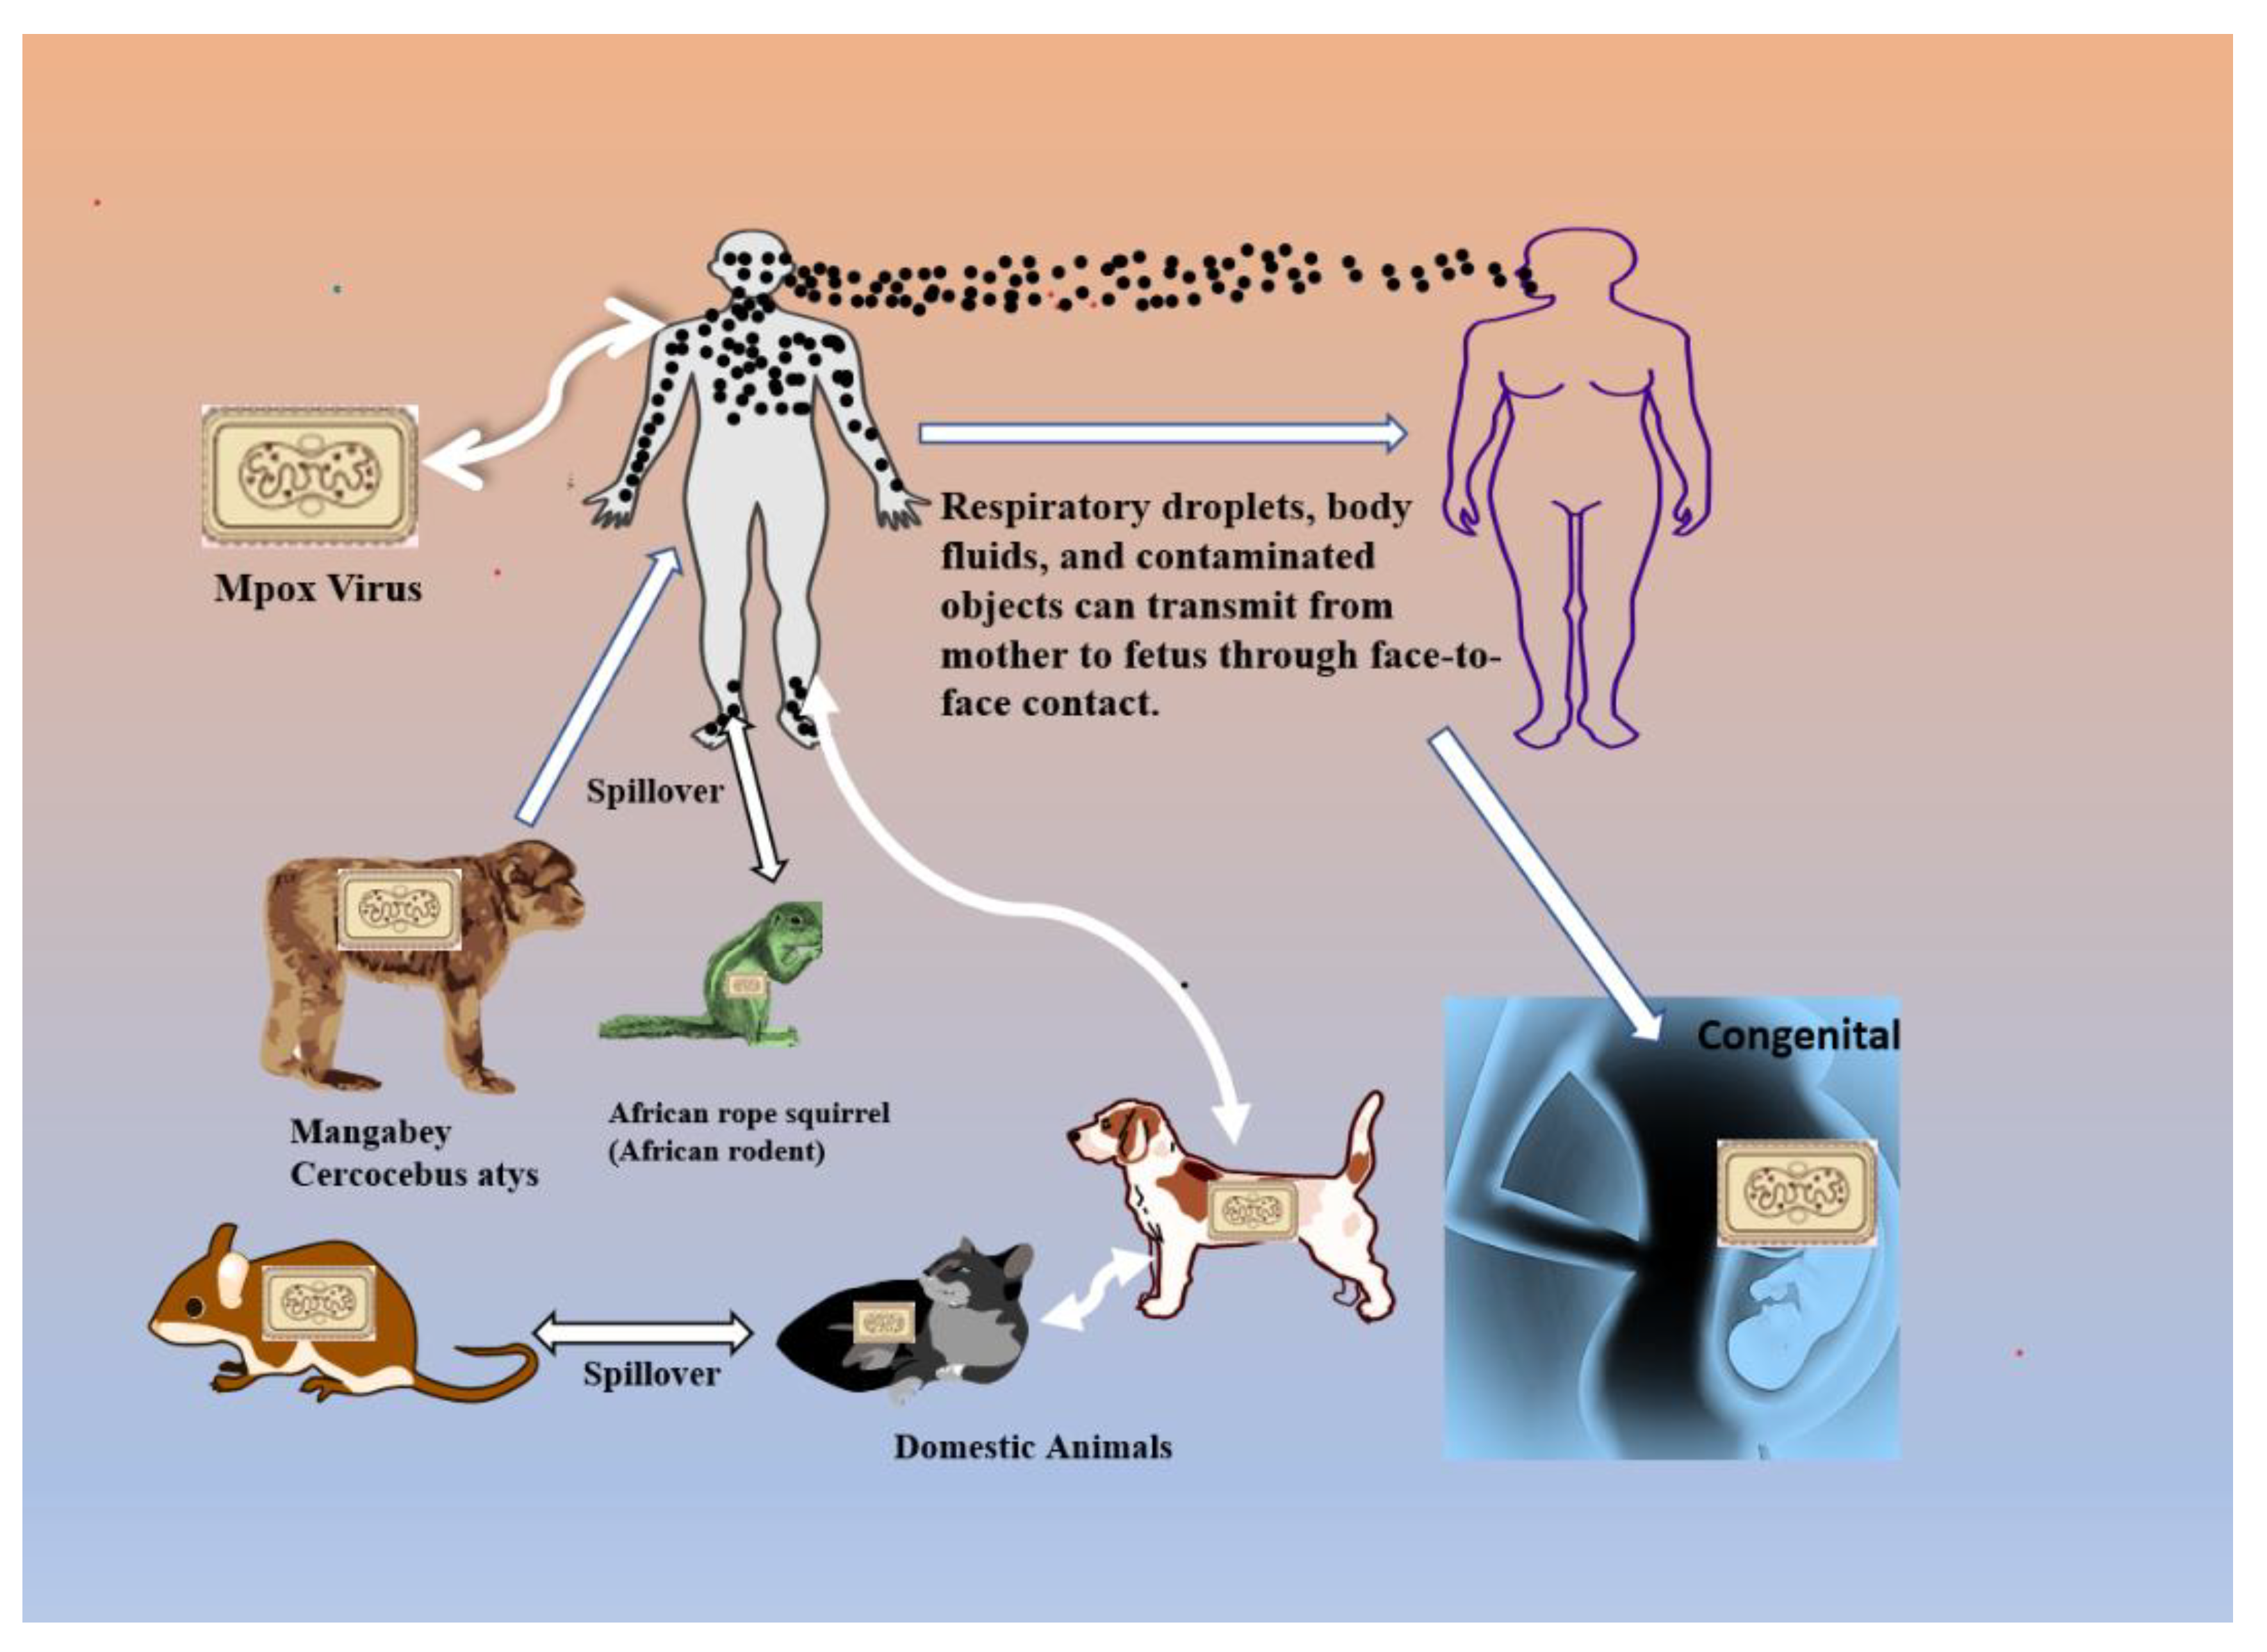 Evidence of human-to-dog transmission of monkeypox virus - The Lancet